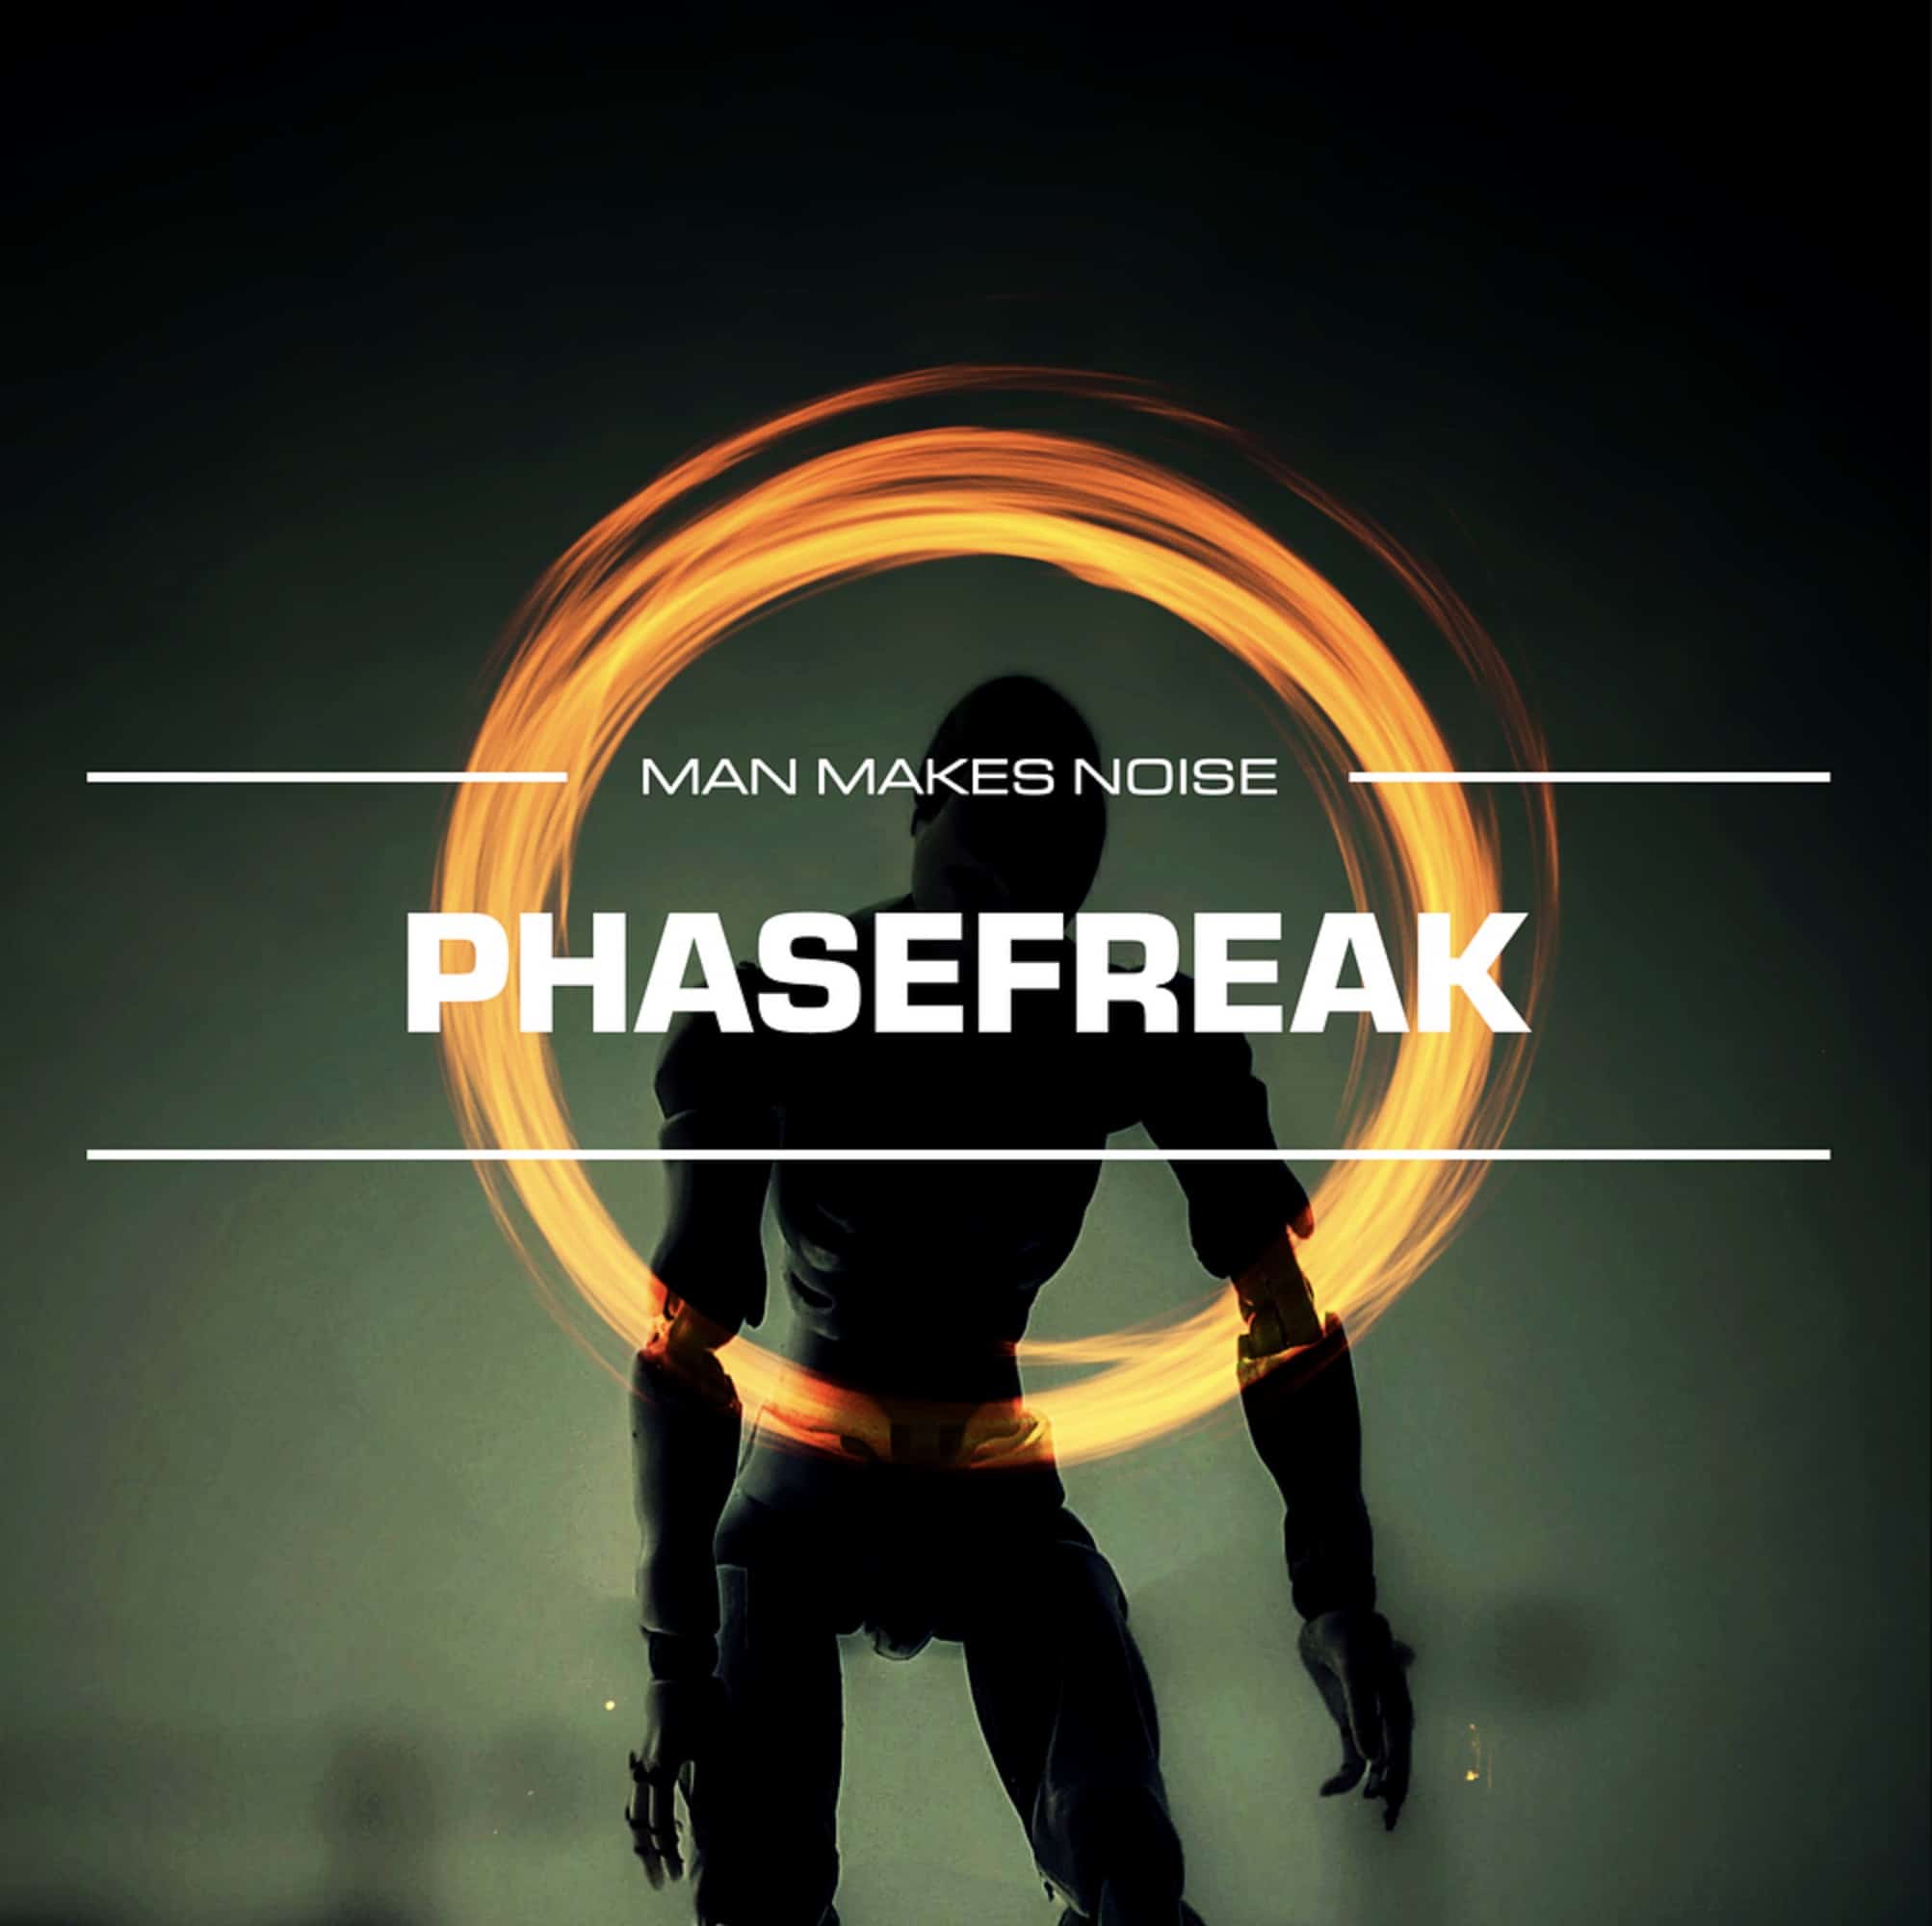 PHASEFREAK Soundset for Phase Plant - Meet the Freak